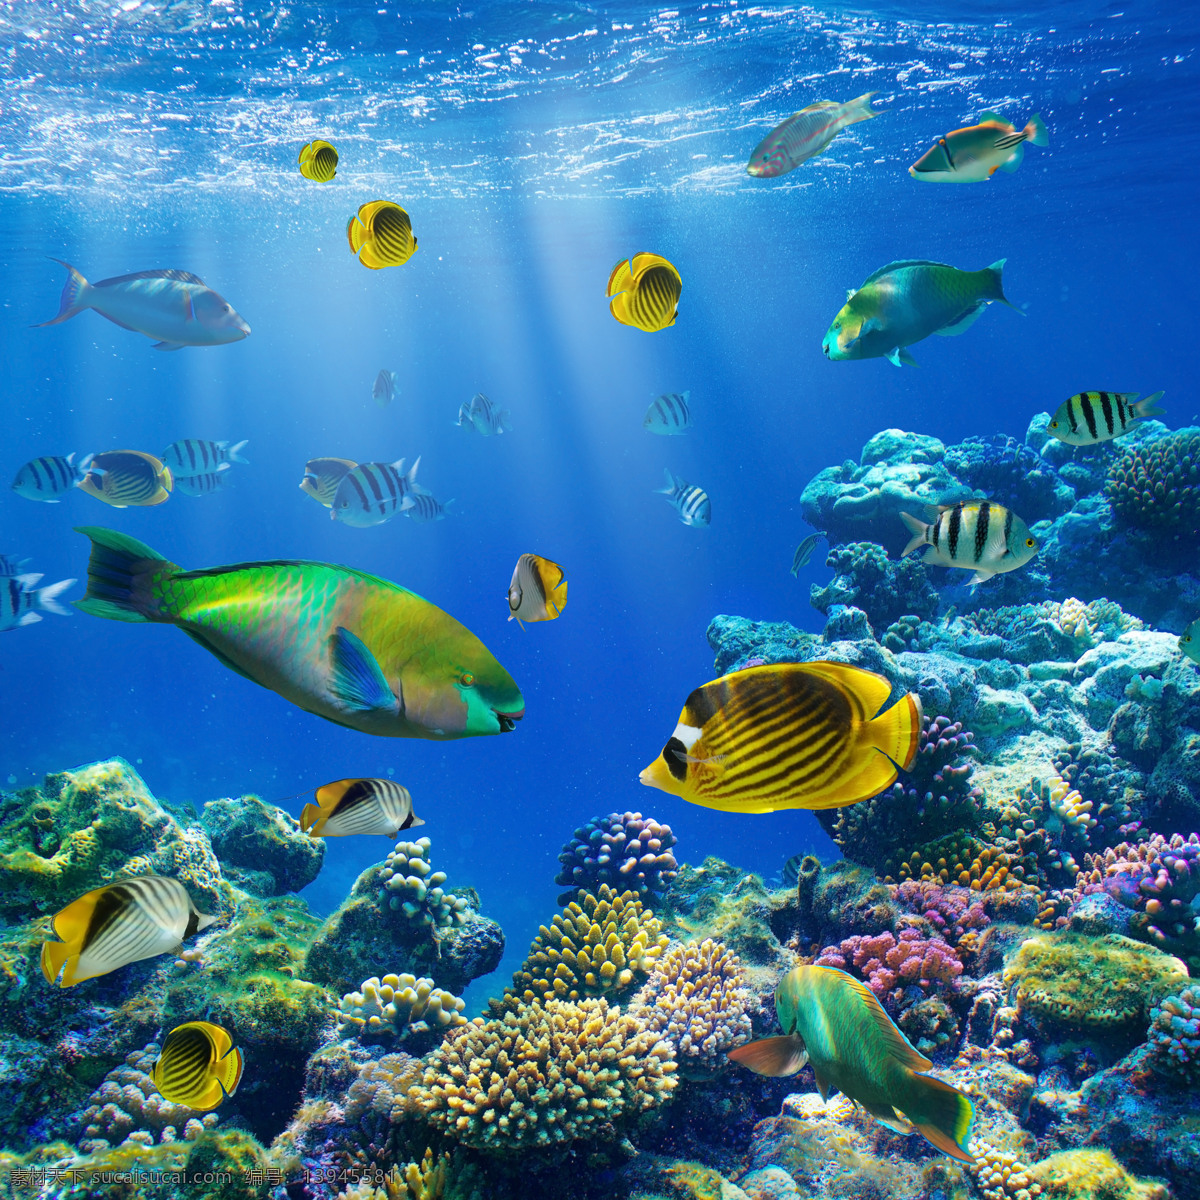 梦幻海底世界 鱼 鱼类动物 海底生物 水中生物 海洋生物 海洋动物 动物世界 生物世界 蓝色